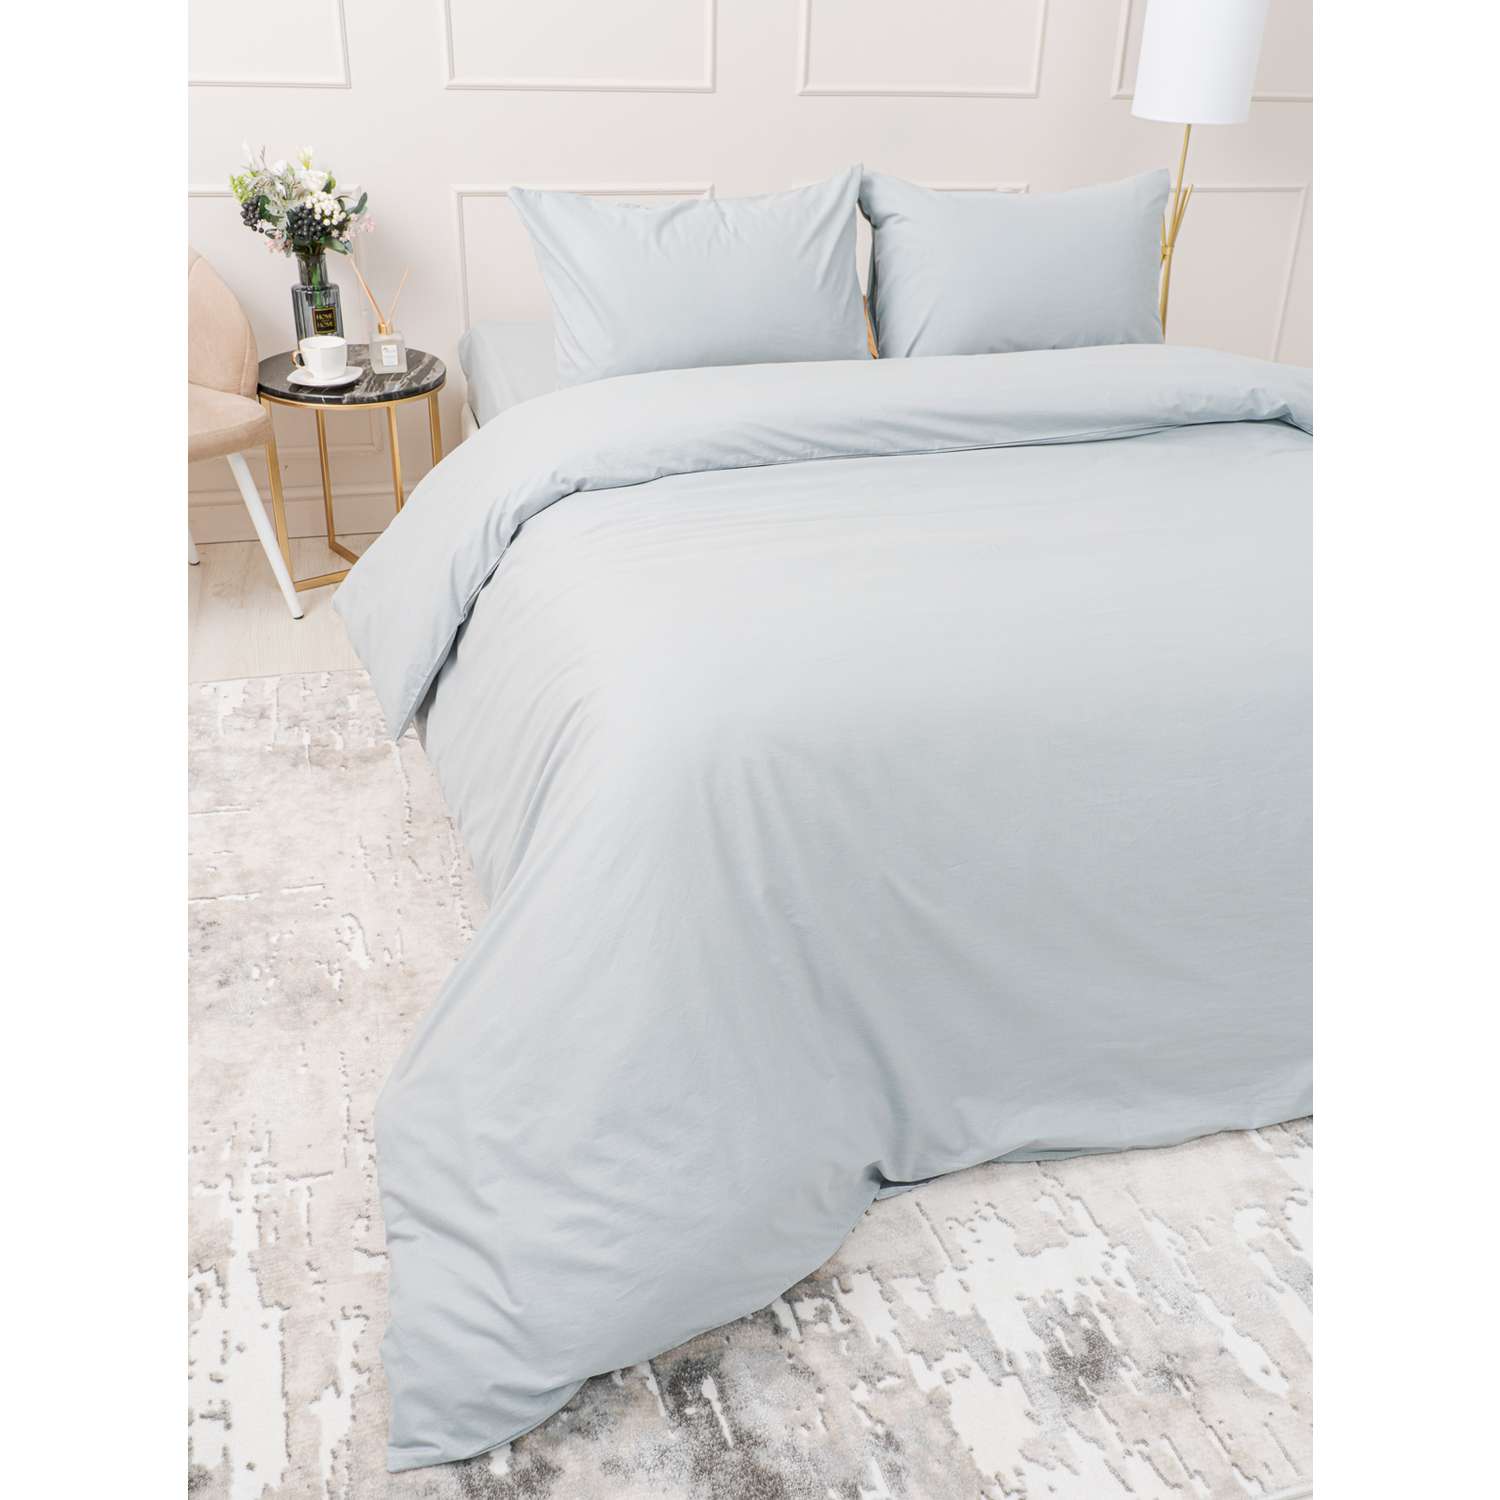 Комплект постельного белья IDEASON поплин 3 предмета 1.5 сп. серый - фото 6